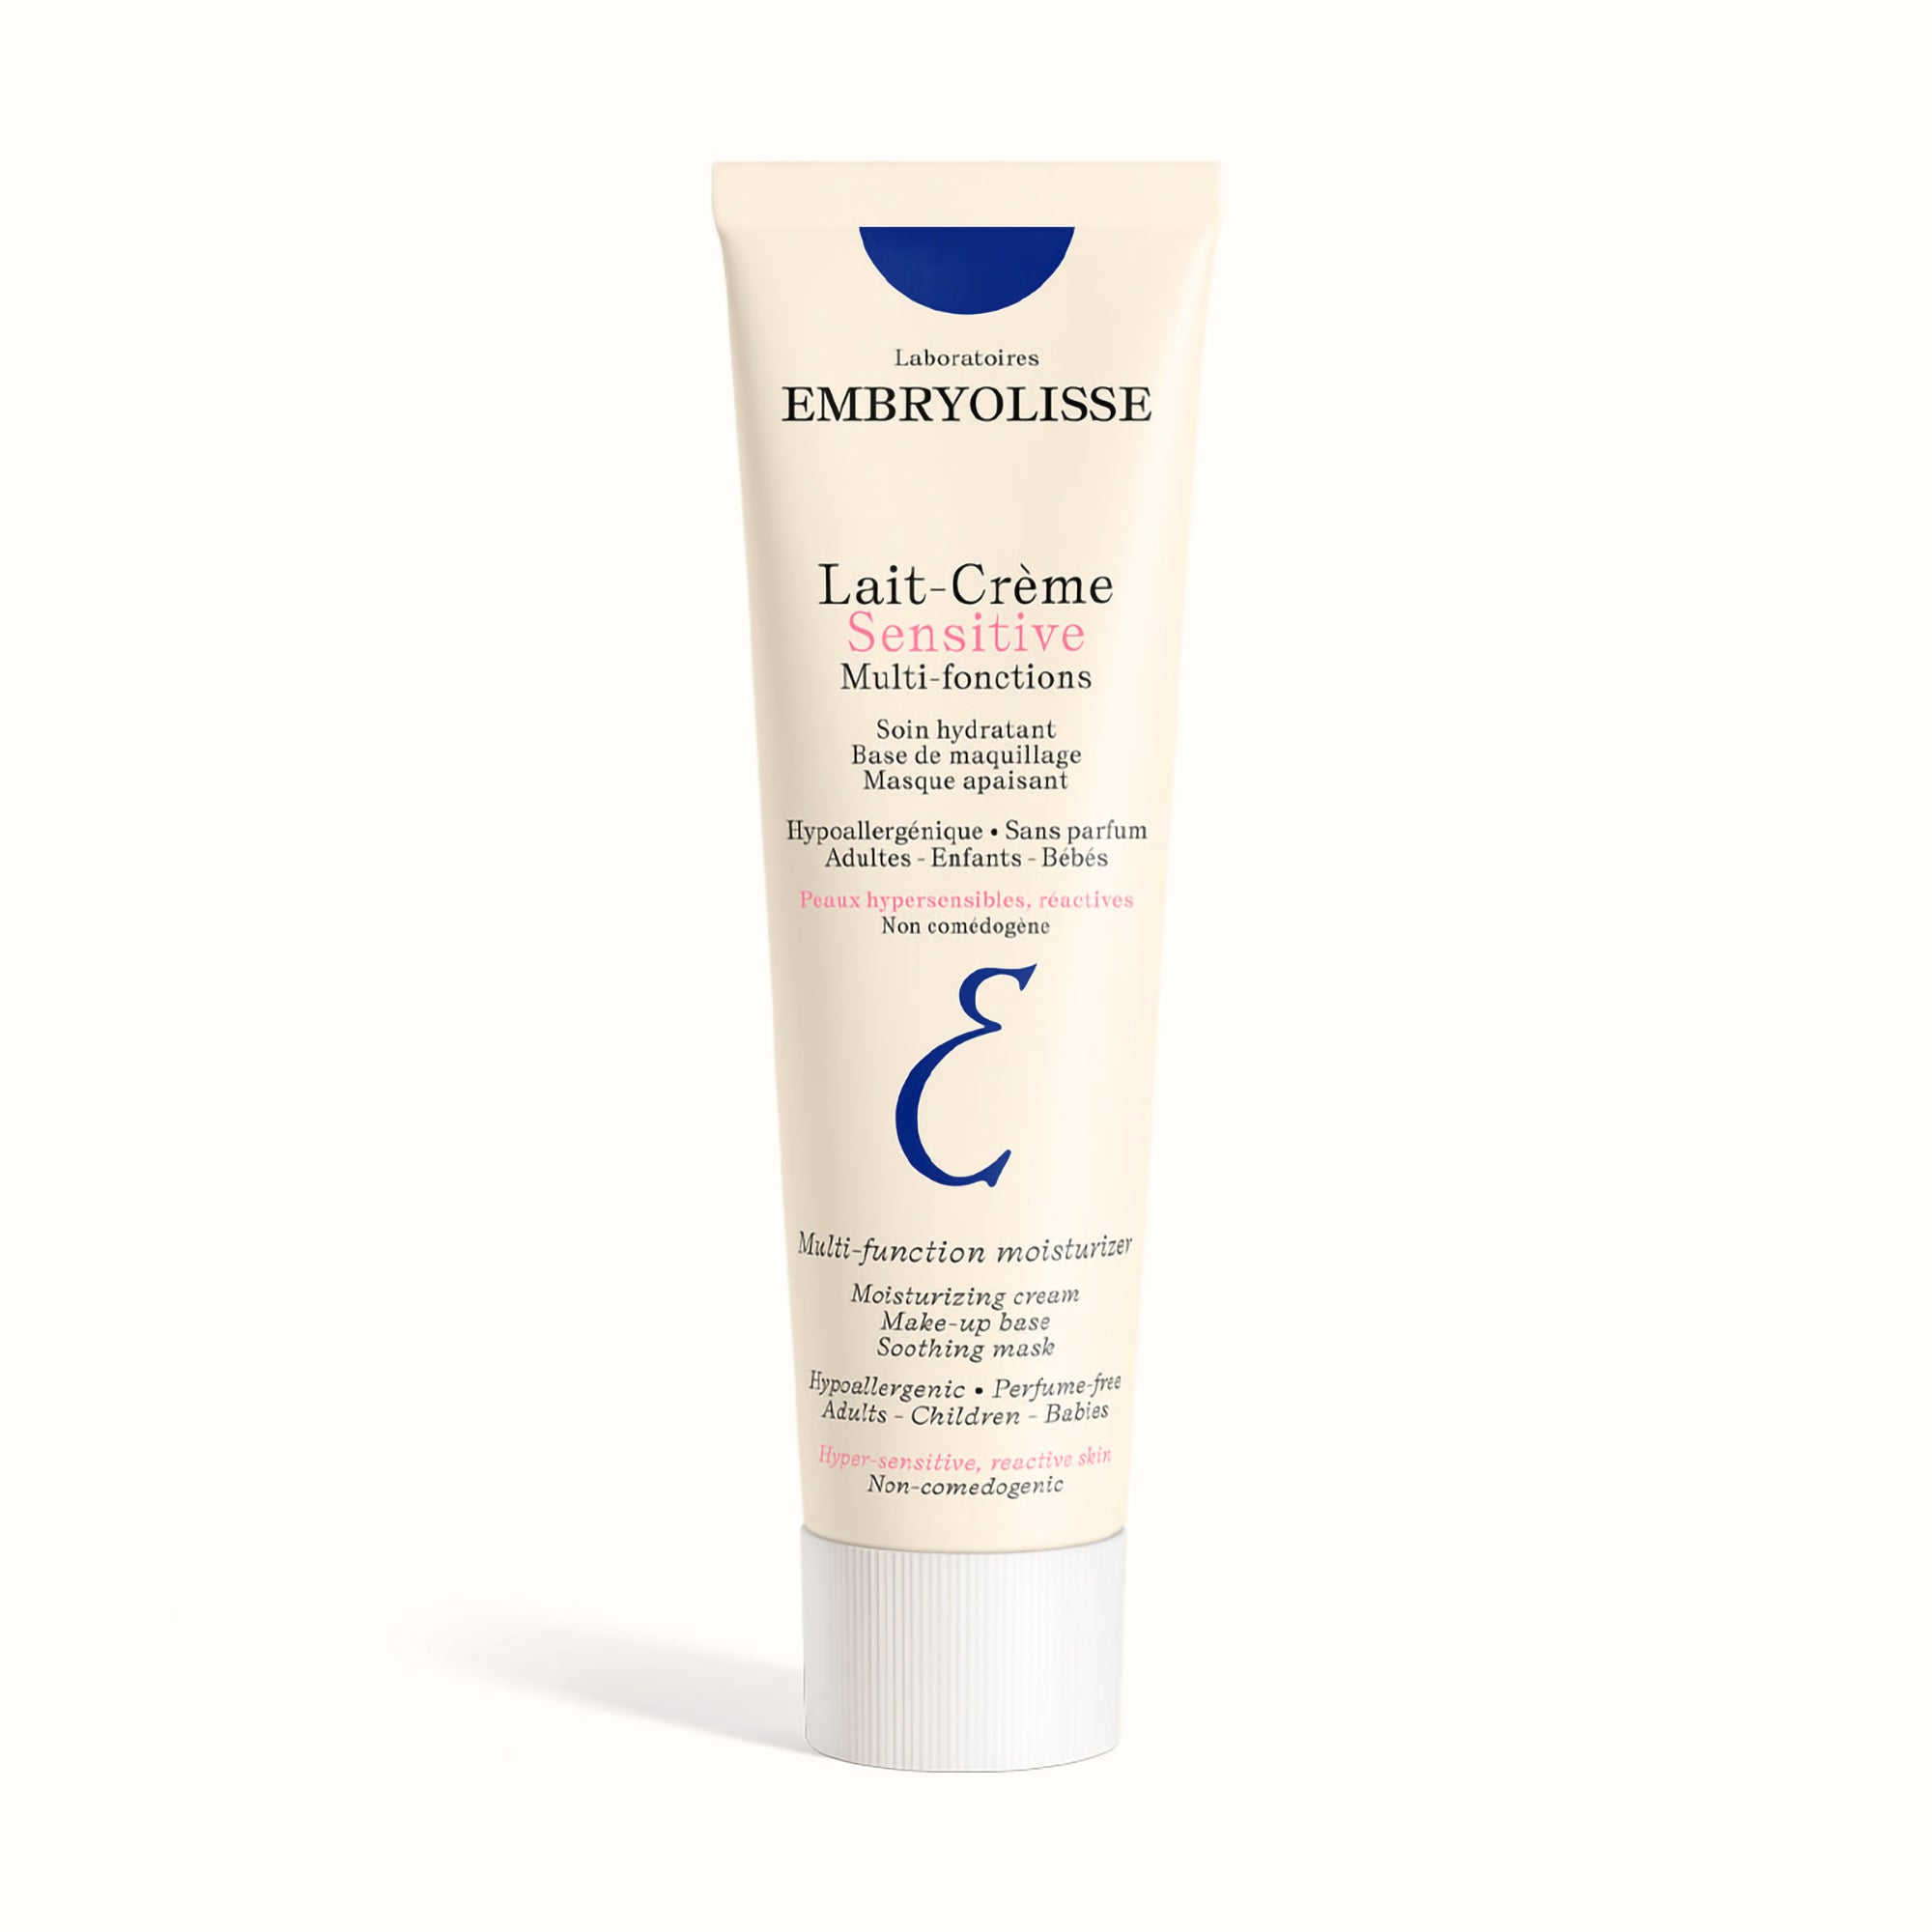 Embryolisse Lait Crème Sensitive / 3.4OZ